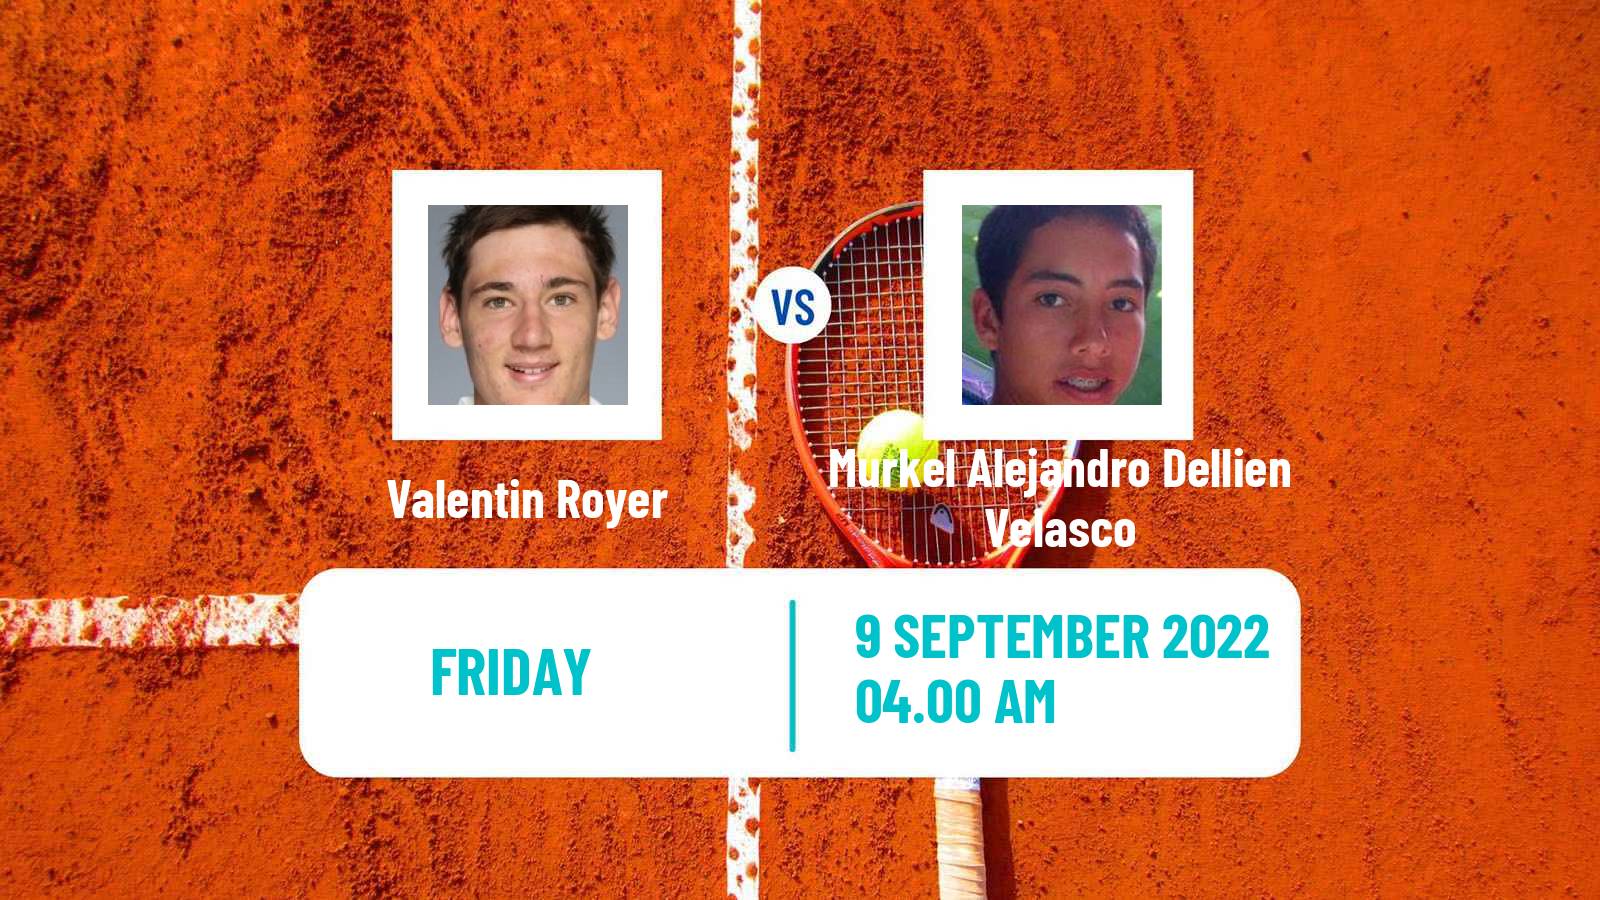 Tennis ITF Tournaments Valentin Royer - Murkel Alejandro Dellien Velasco